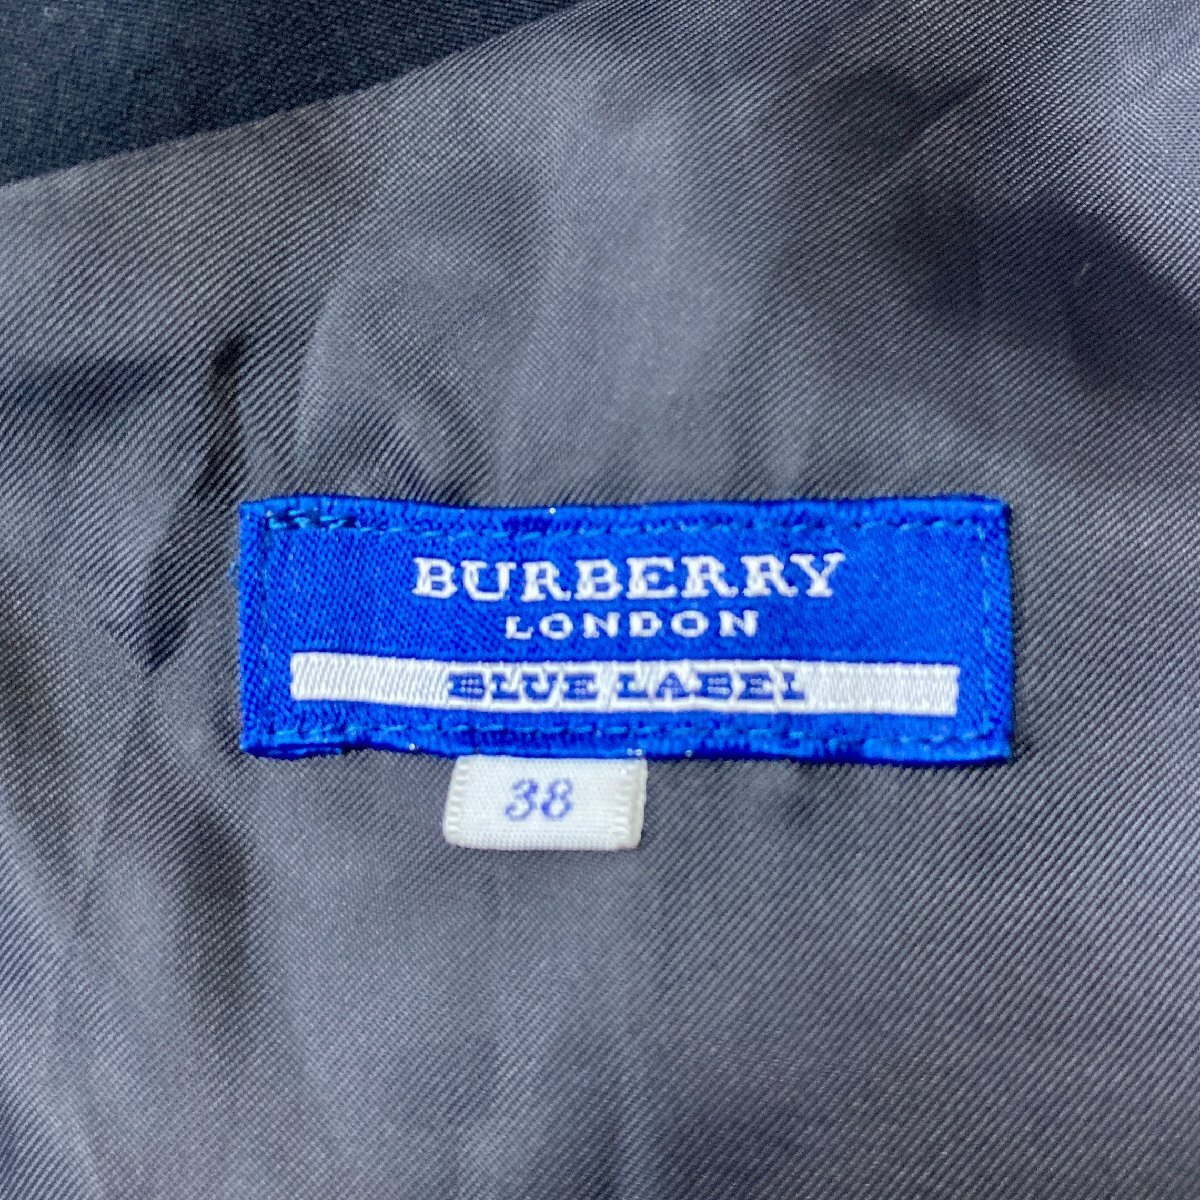 ★BURBERRY LONDON BLUE LABEL バーバリー ロンドン ブルーレーベル ワンピース Aライン サイズ38 ネイビー レッド スカート 0.4kg★の画像8